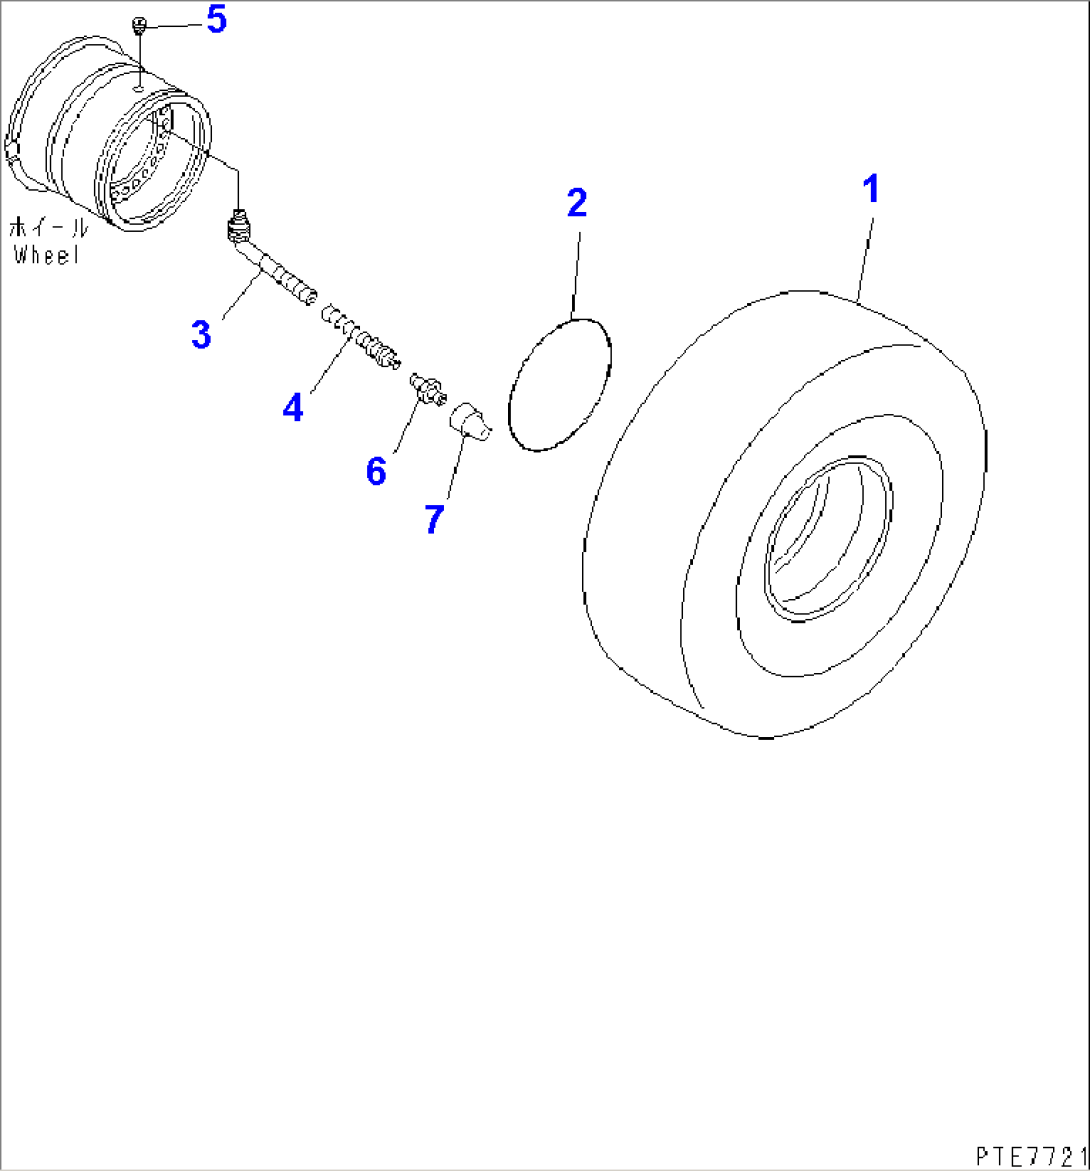 TIRE (29.5-25-22PR-L3) (TUBELESS)